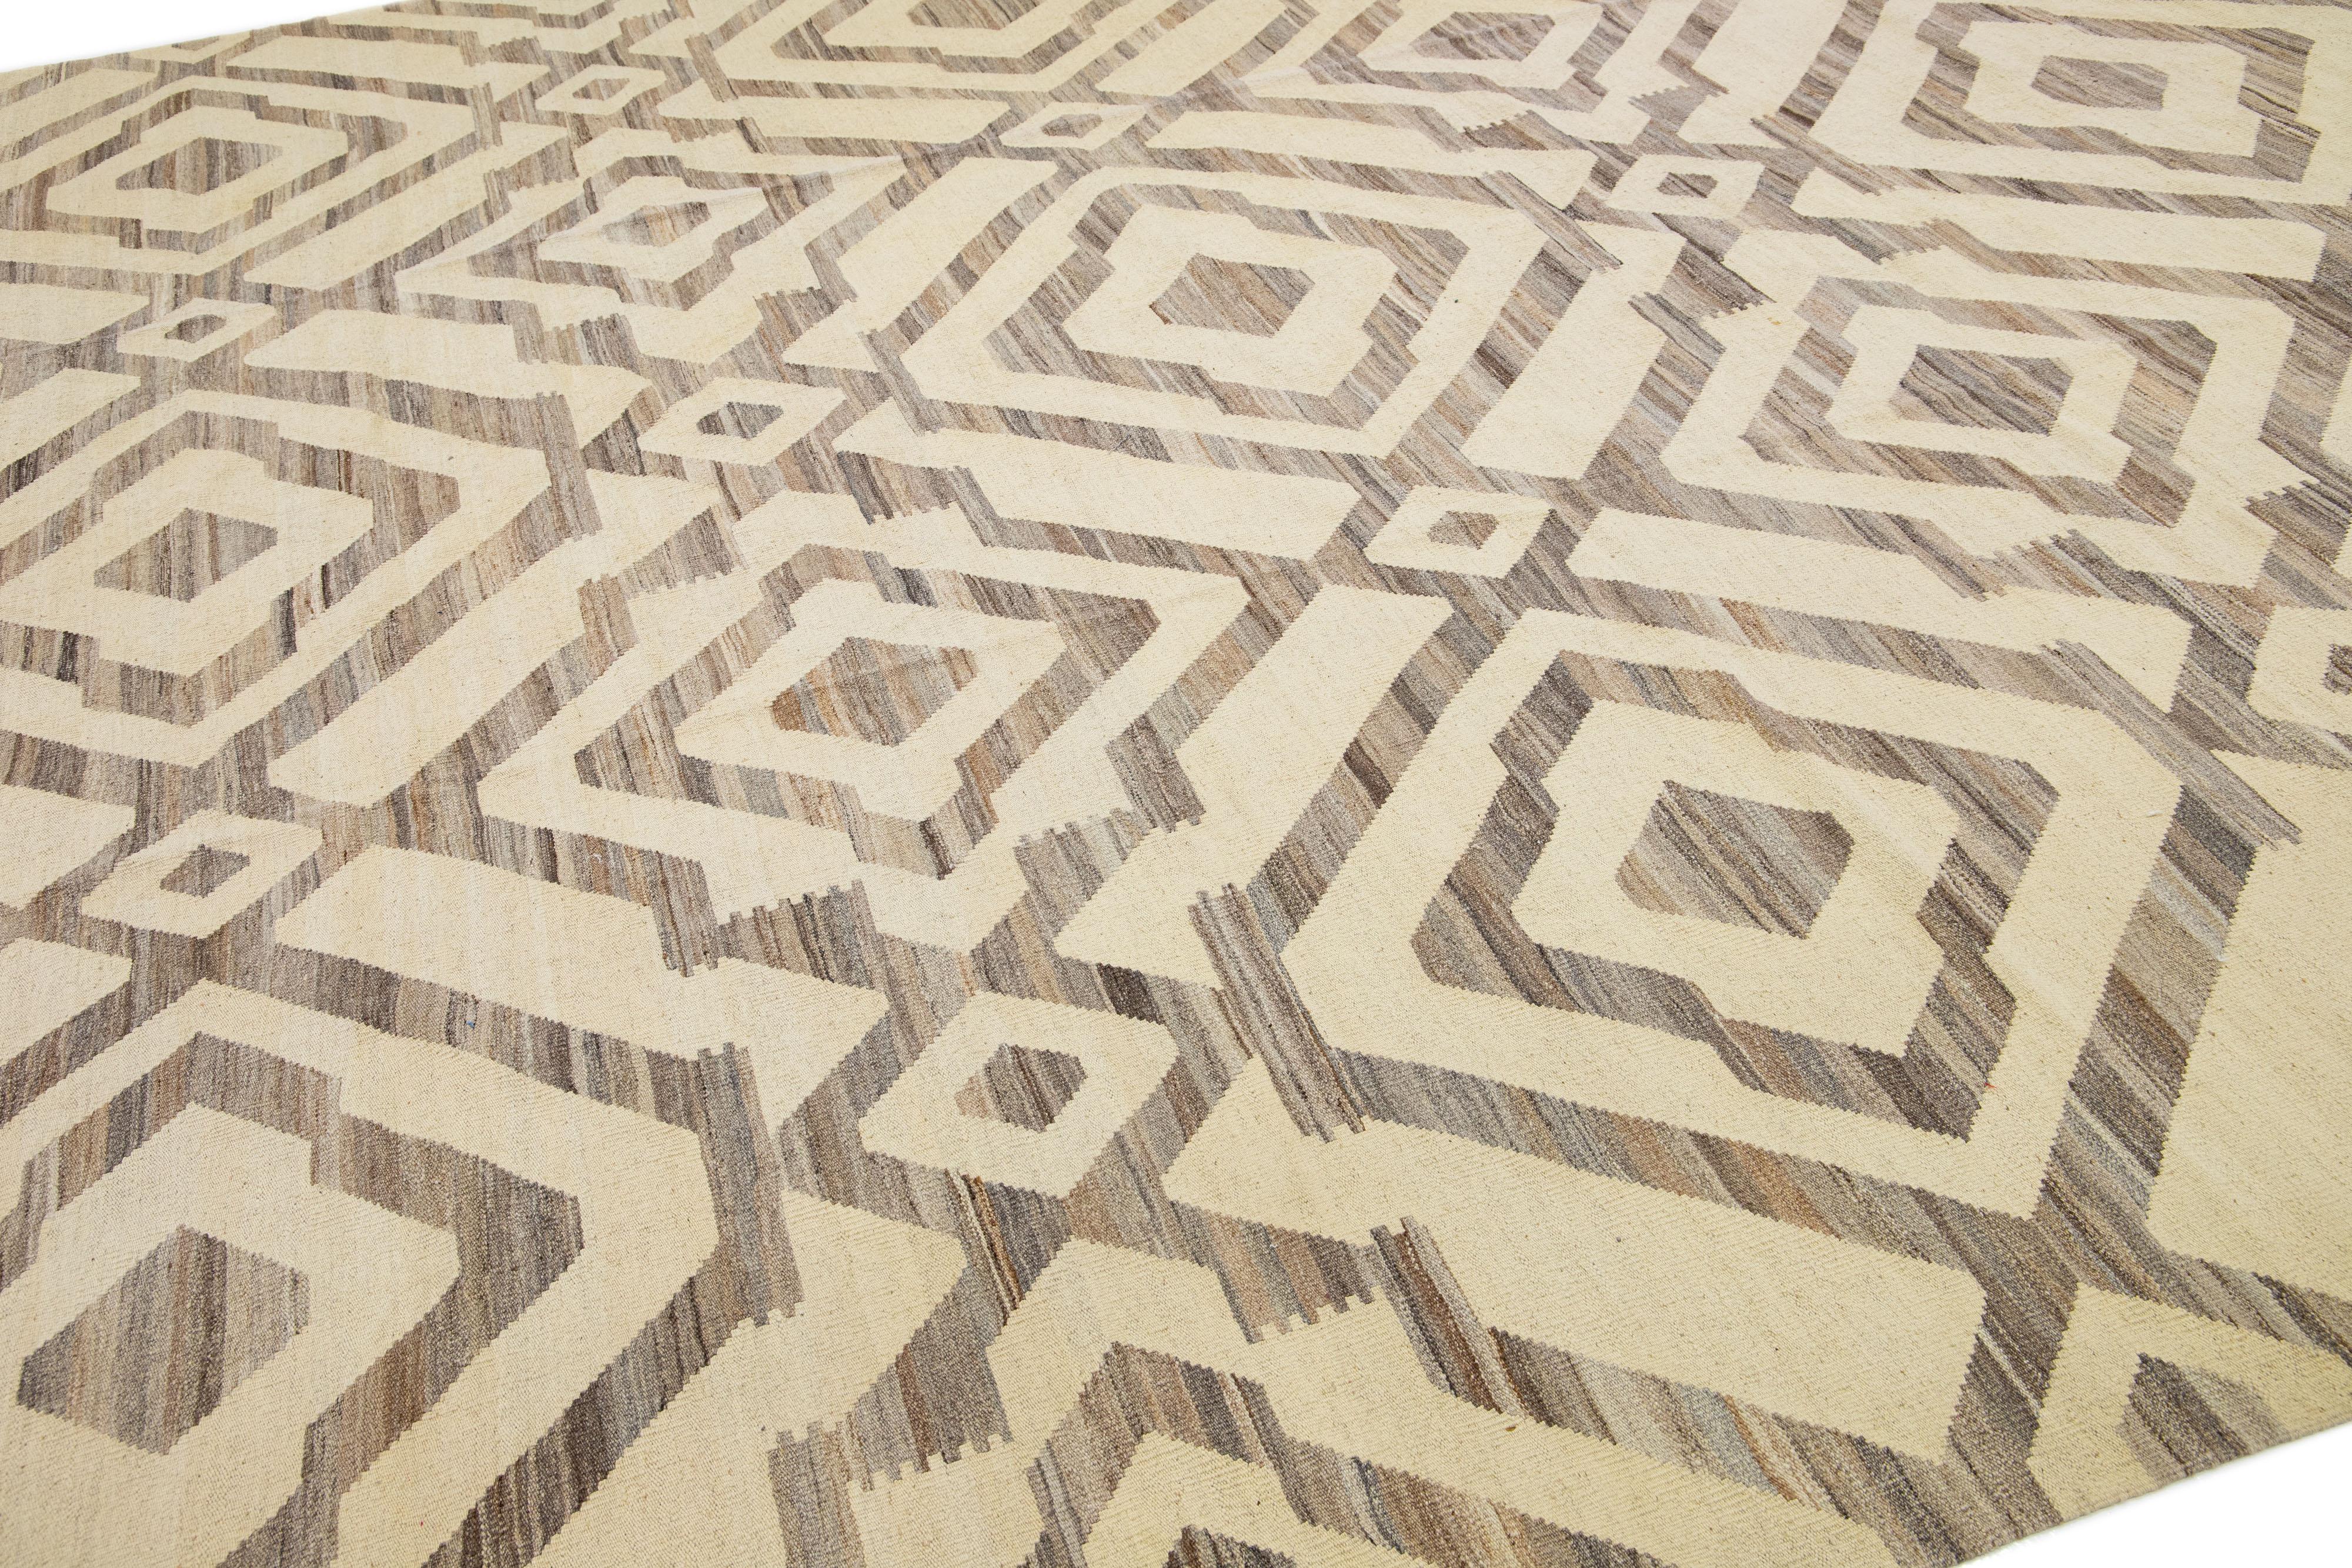 Dieser exquisite Kilim-Teppich zeigt ein modernes geometrisches Muster auf einem neutralen beigen Hintergrund und wurde fachmännisch aus handgeknüpfter Wolle hergestellt. Dieses Stück ist eine atemberaubende Ergänzung zu jedem modernen Dekor,